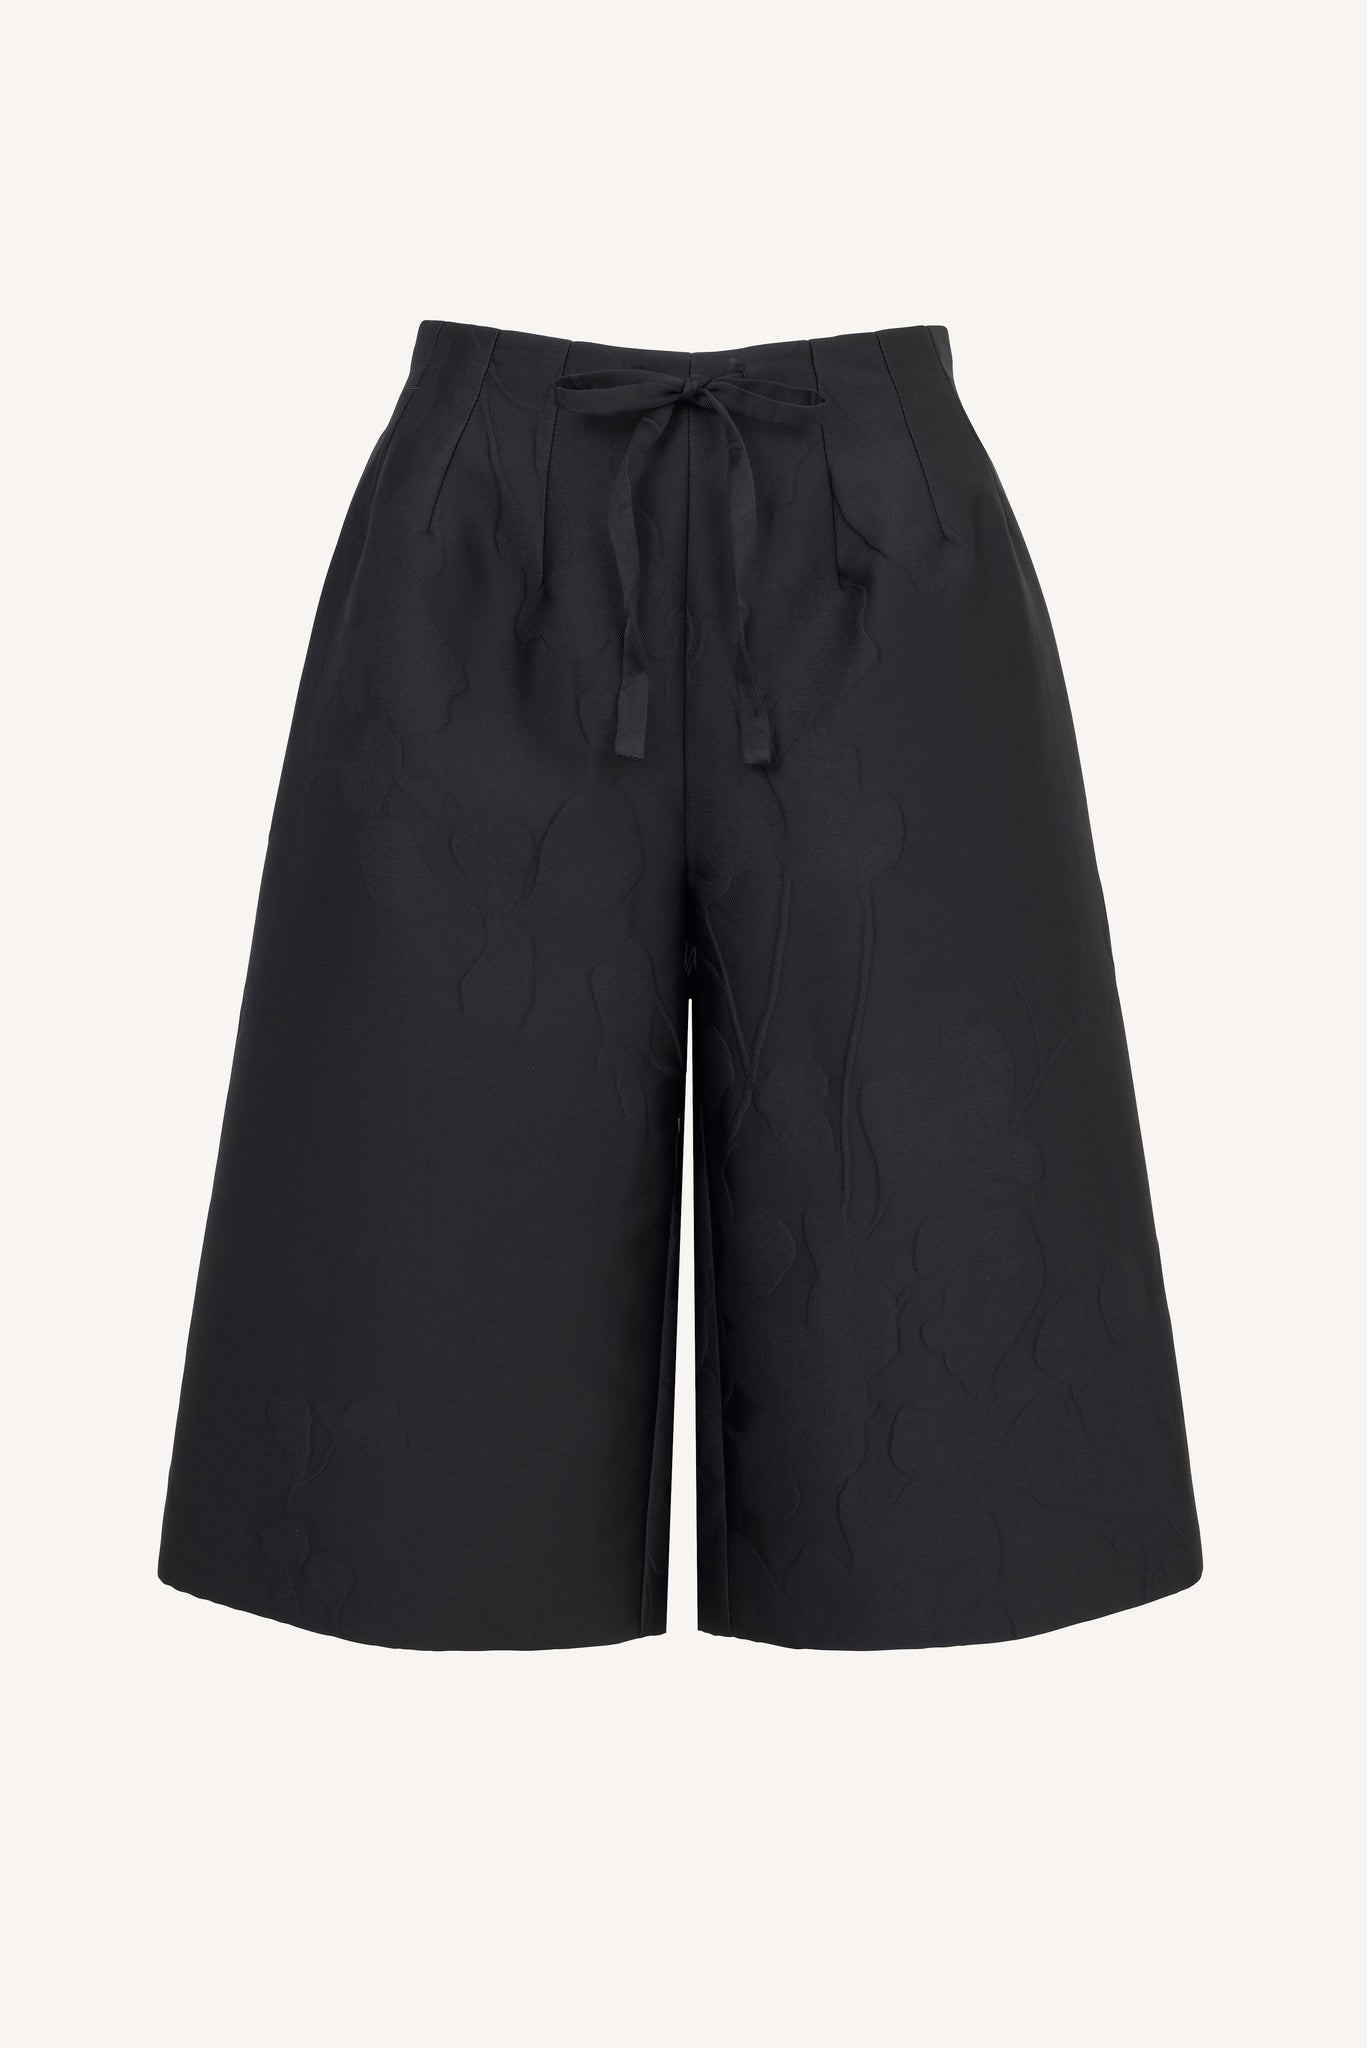 Apera Shorts in Black Floral Embossed Cloque | Emilia Wickstead